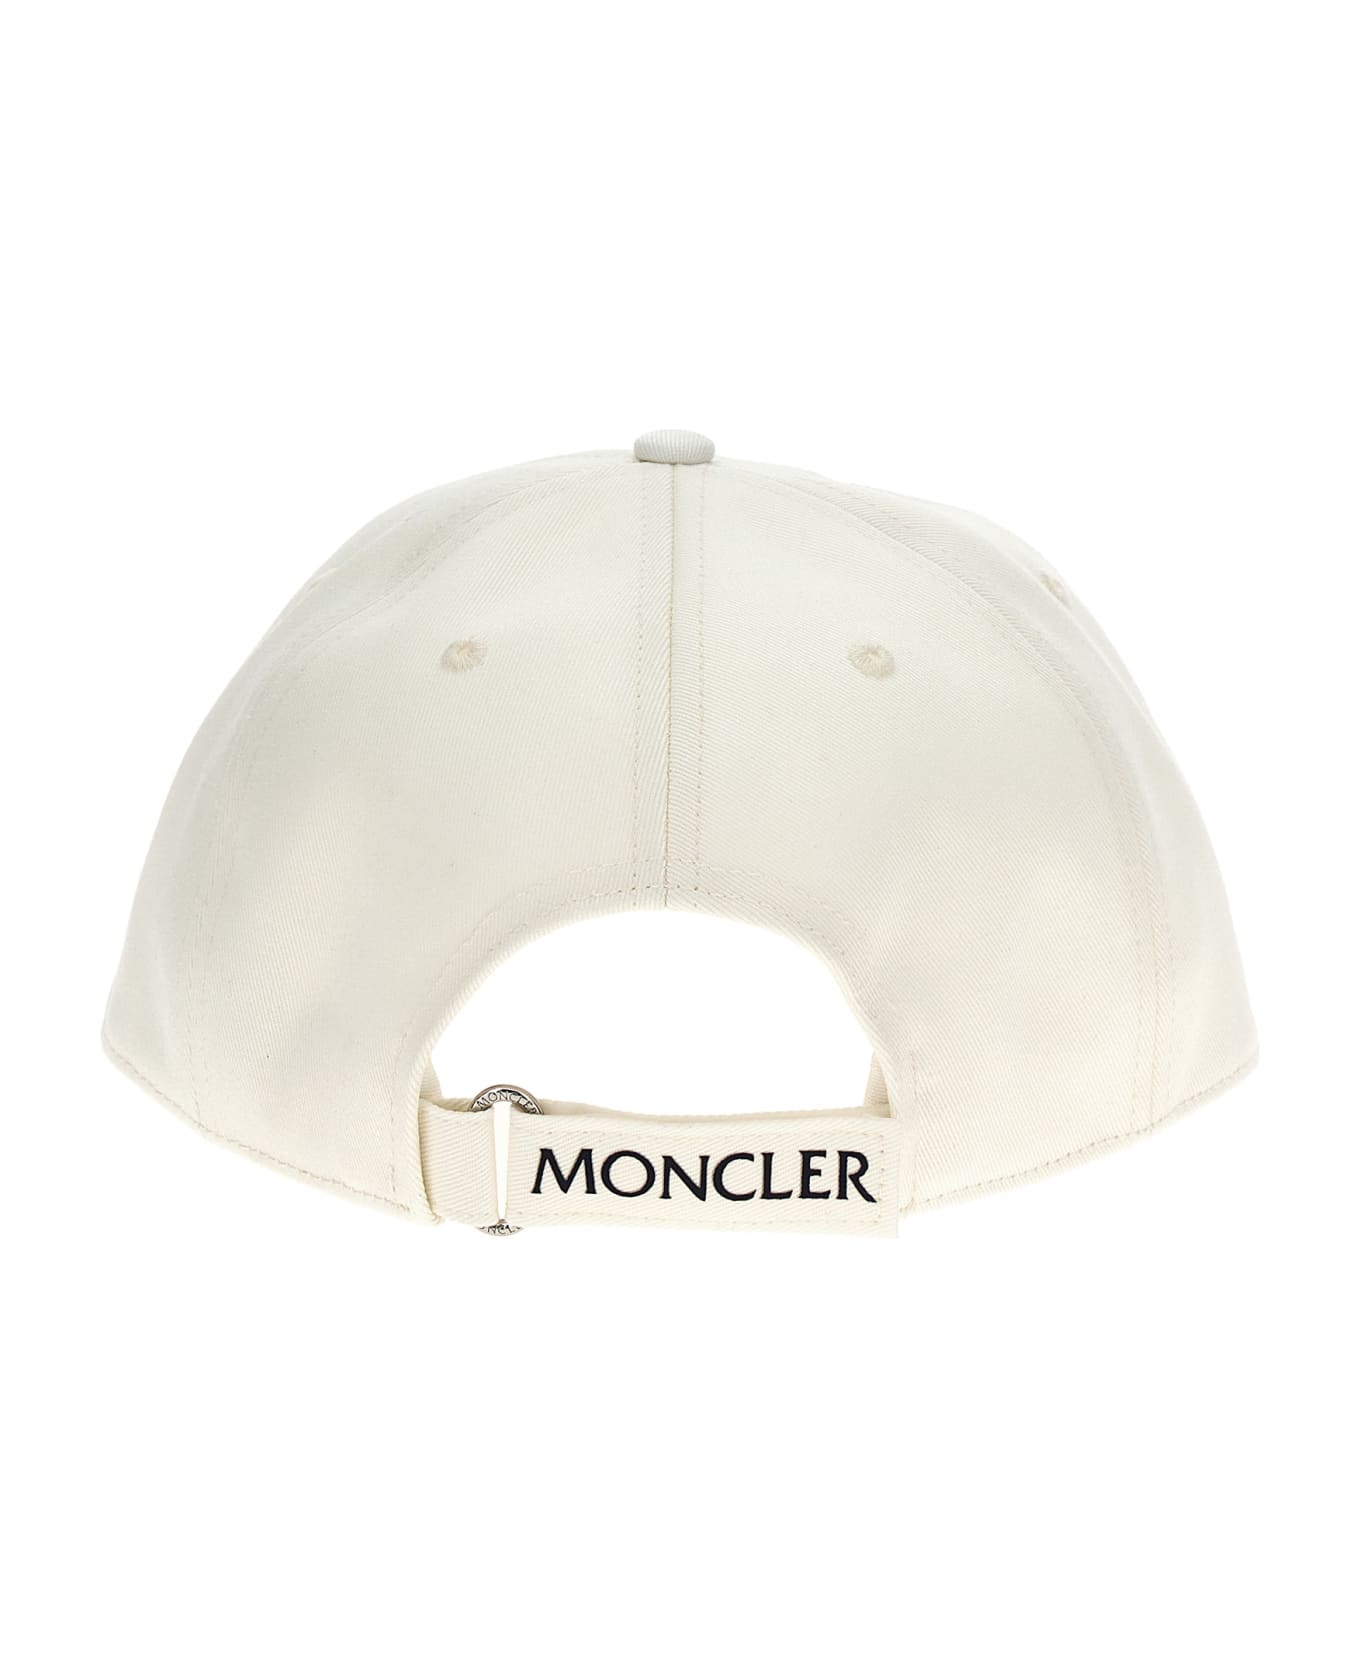 Moncler Logo Patch Cap - White 帽子